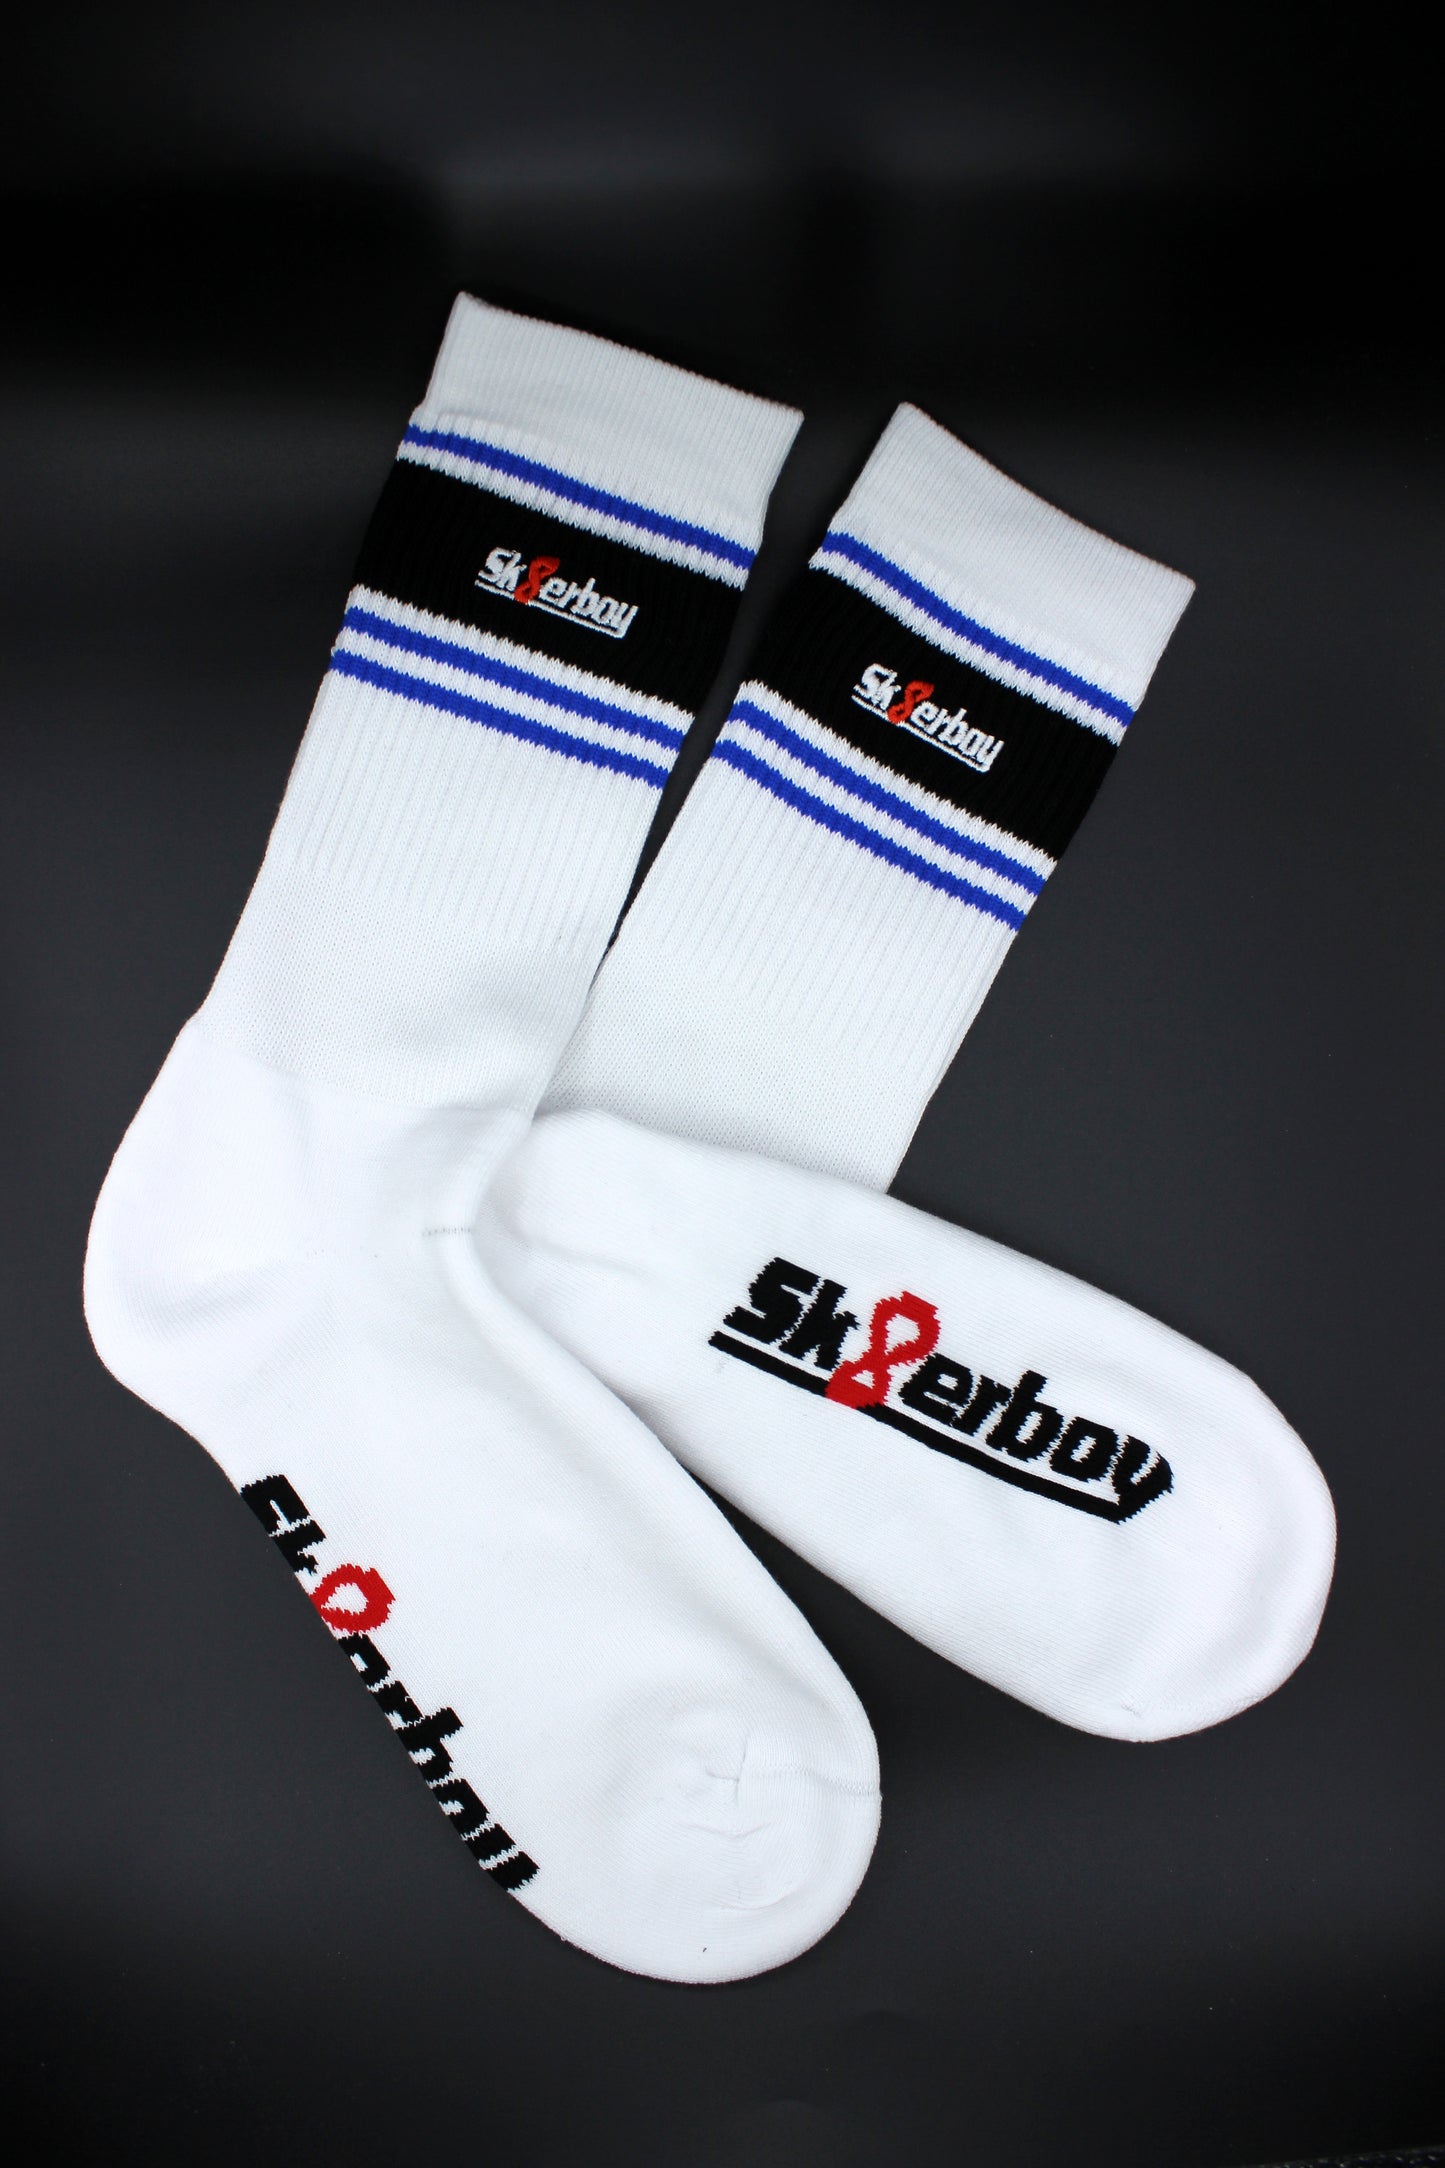 sk8erboy deluxe socks royal blau in detail ansicht mit blauem streifen am bund und hochwertigem logo in einem schwarzen balken